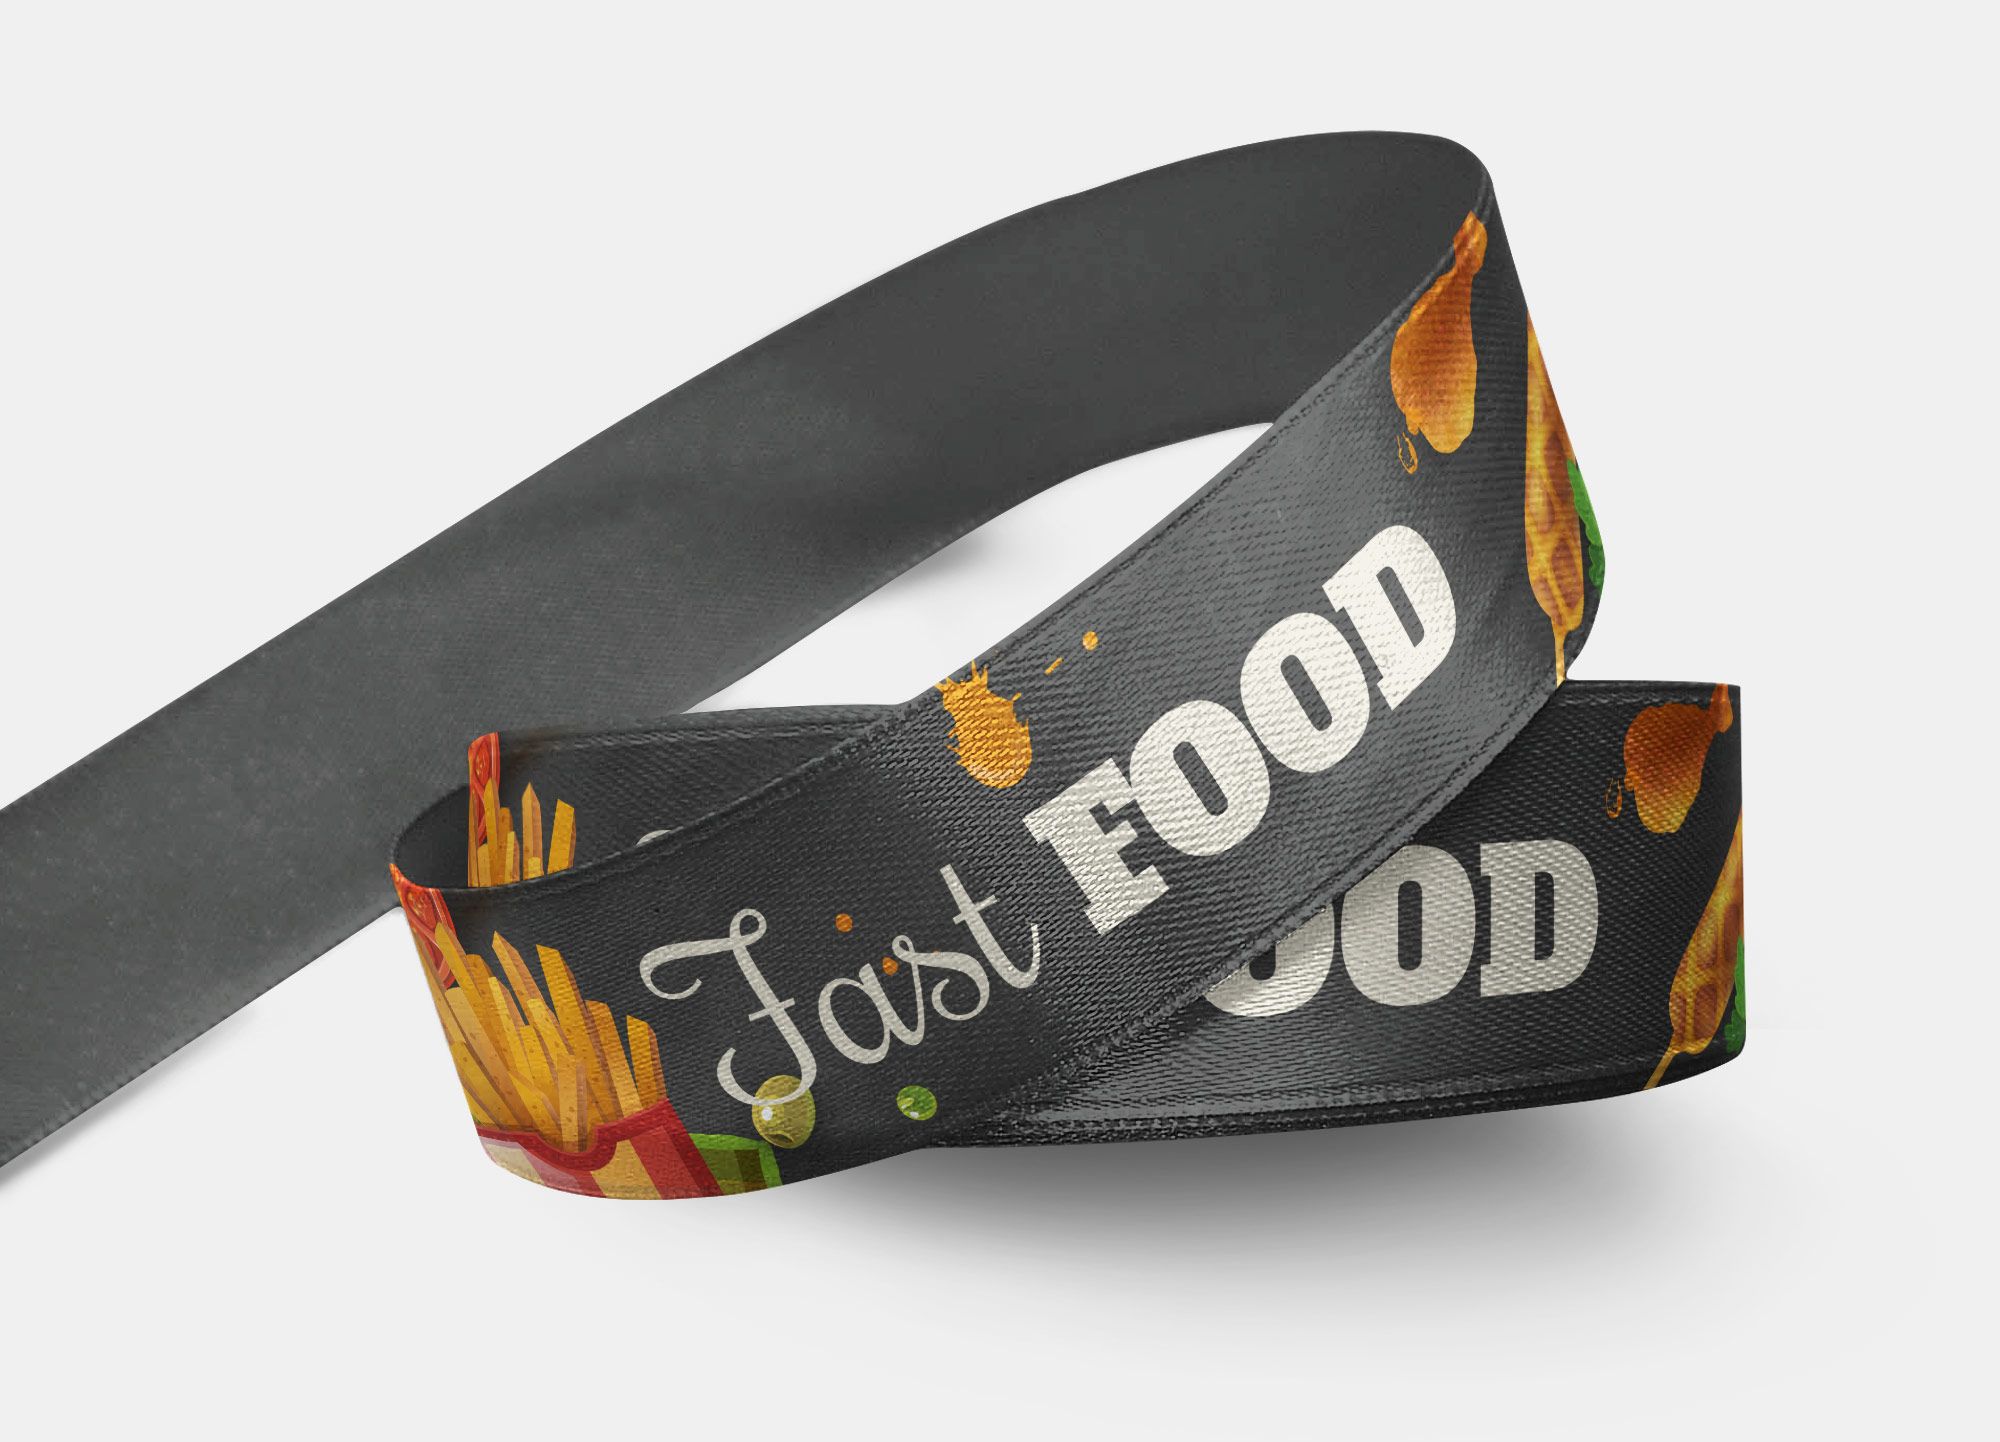 Nastro Fast Food perfetto per essere usato come porta-badge o braccialetto lasciapassare per eventi legati allo street food.